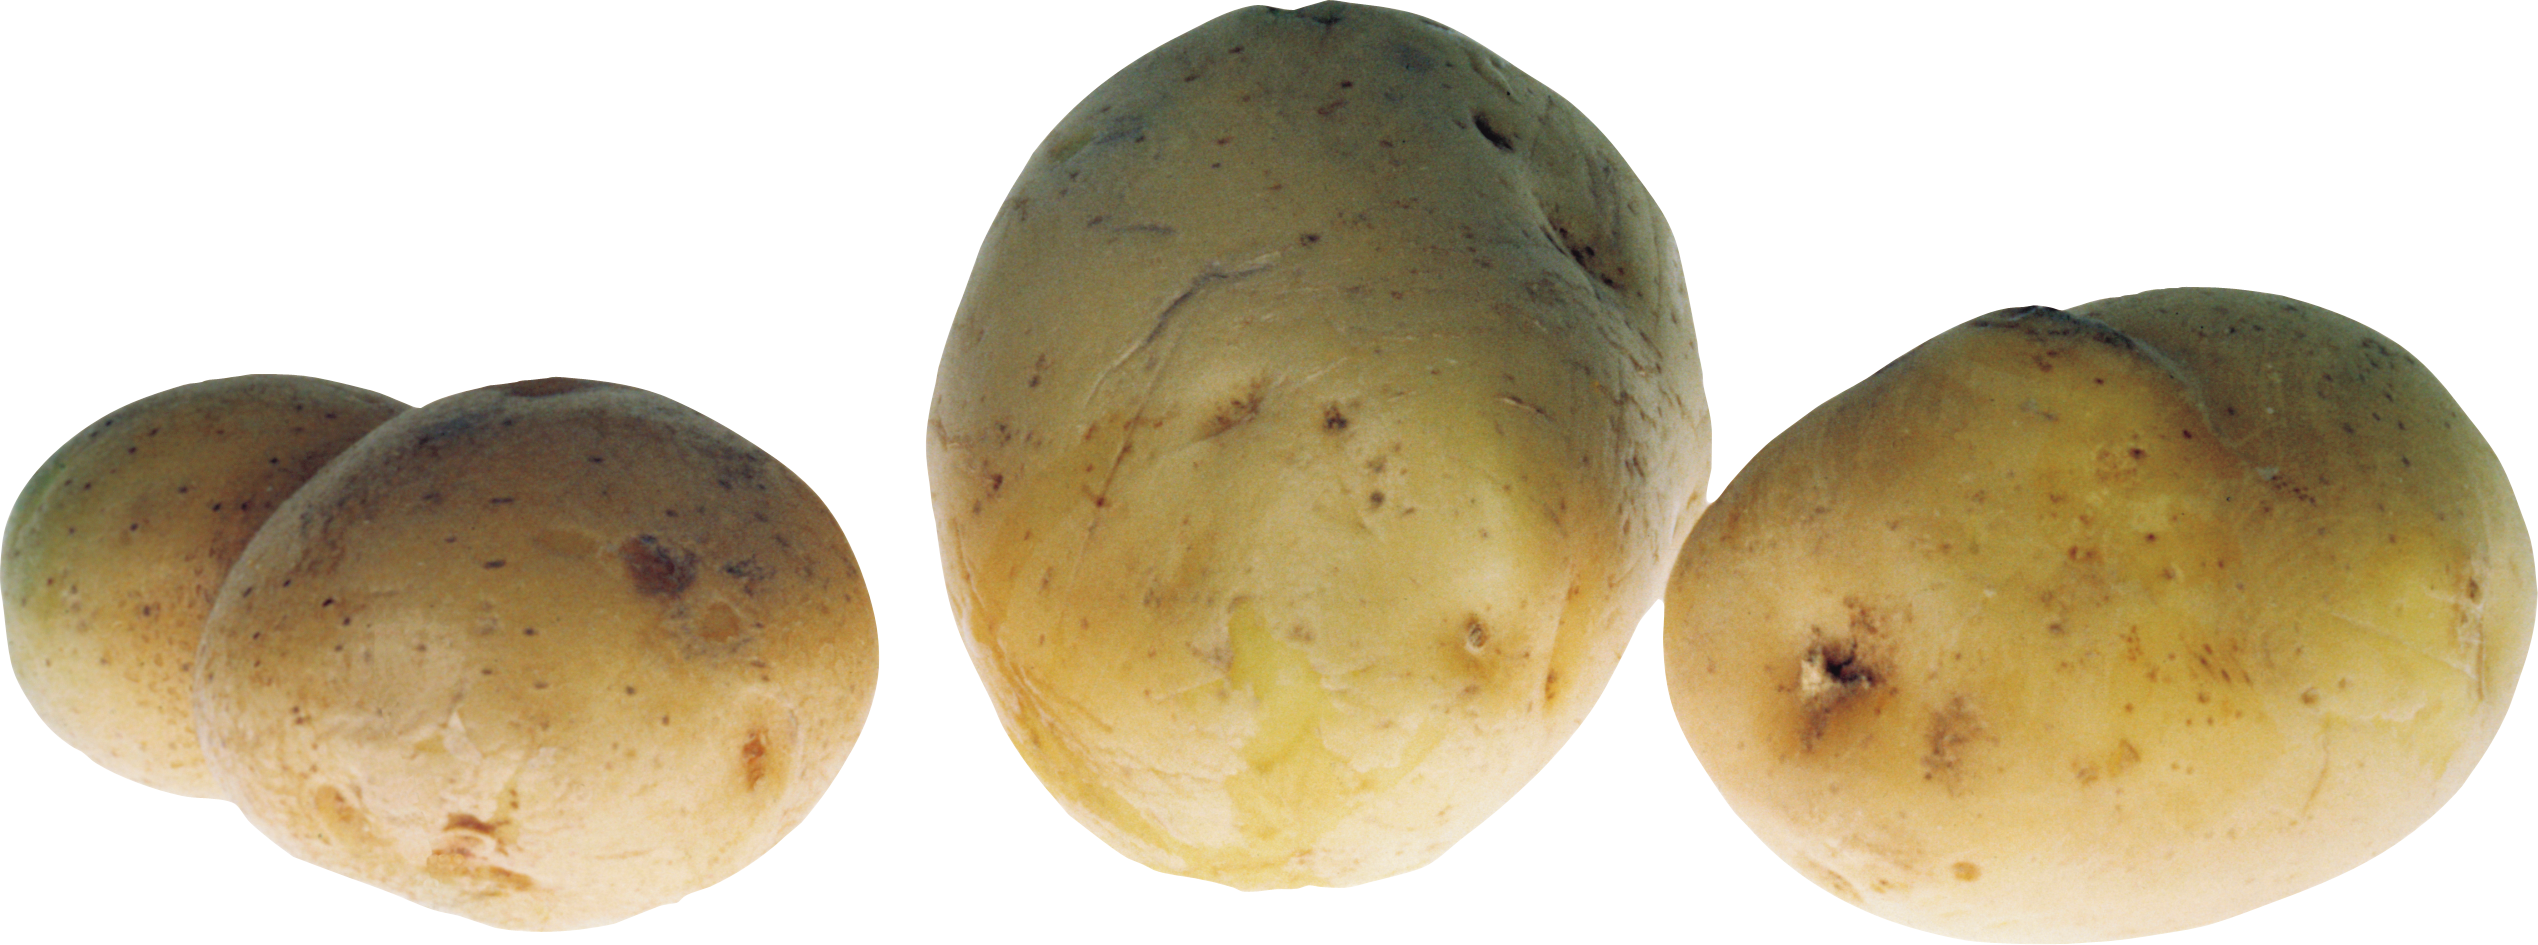 üç patates